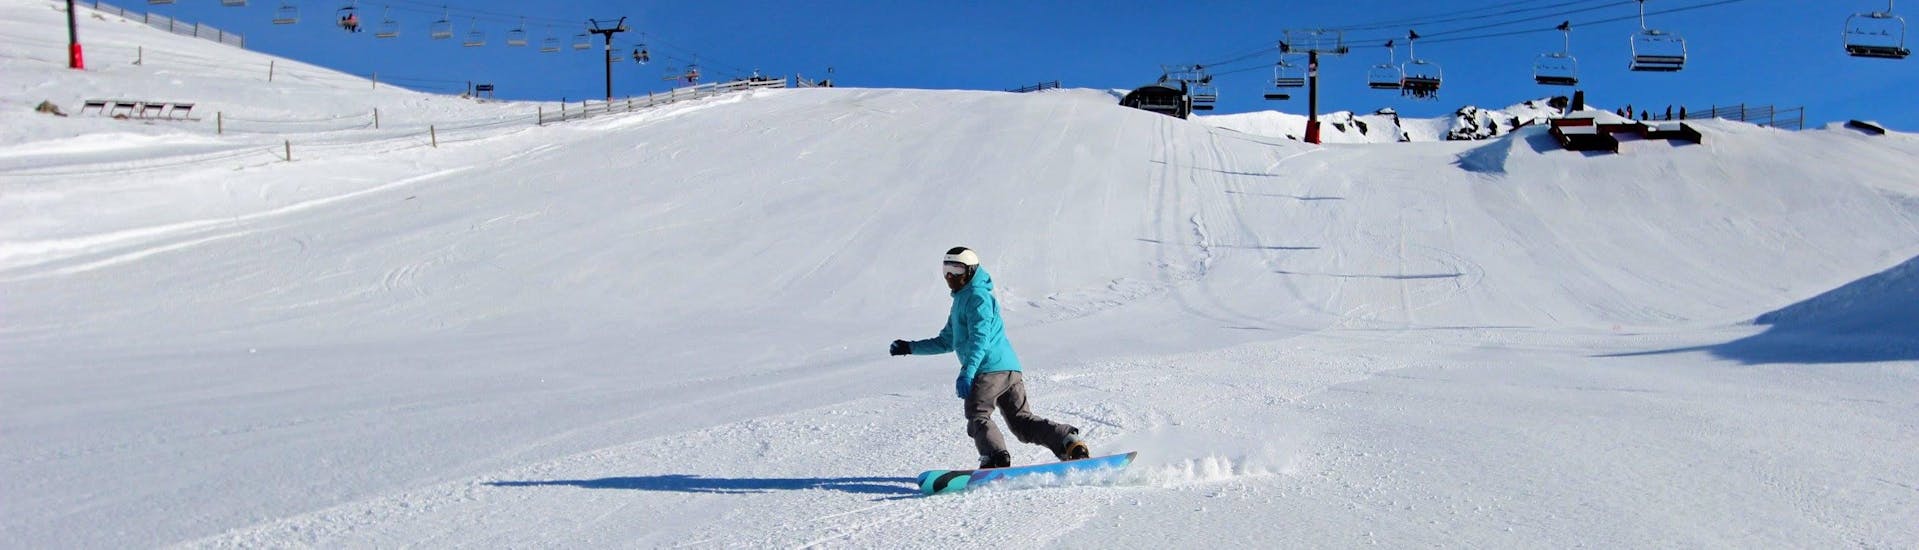 Clases de snowboard a partir de 5 años para todos los niveles.